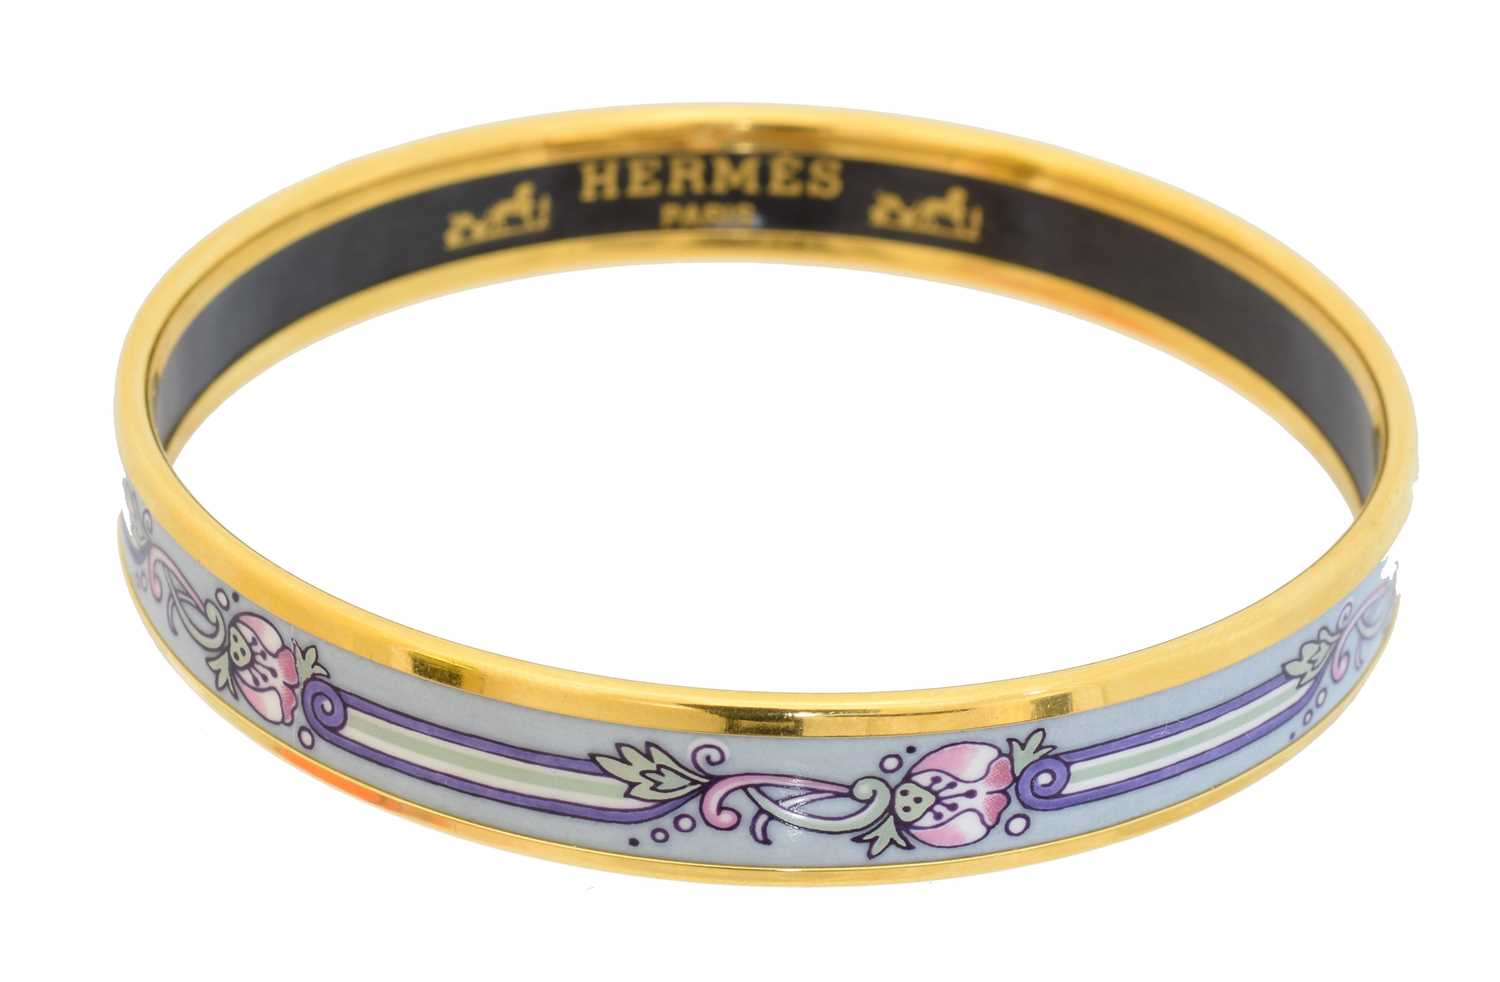 Lot A Hermès enamel bangle bracelet